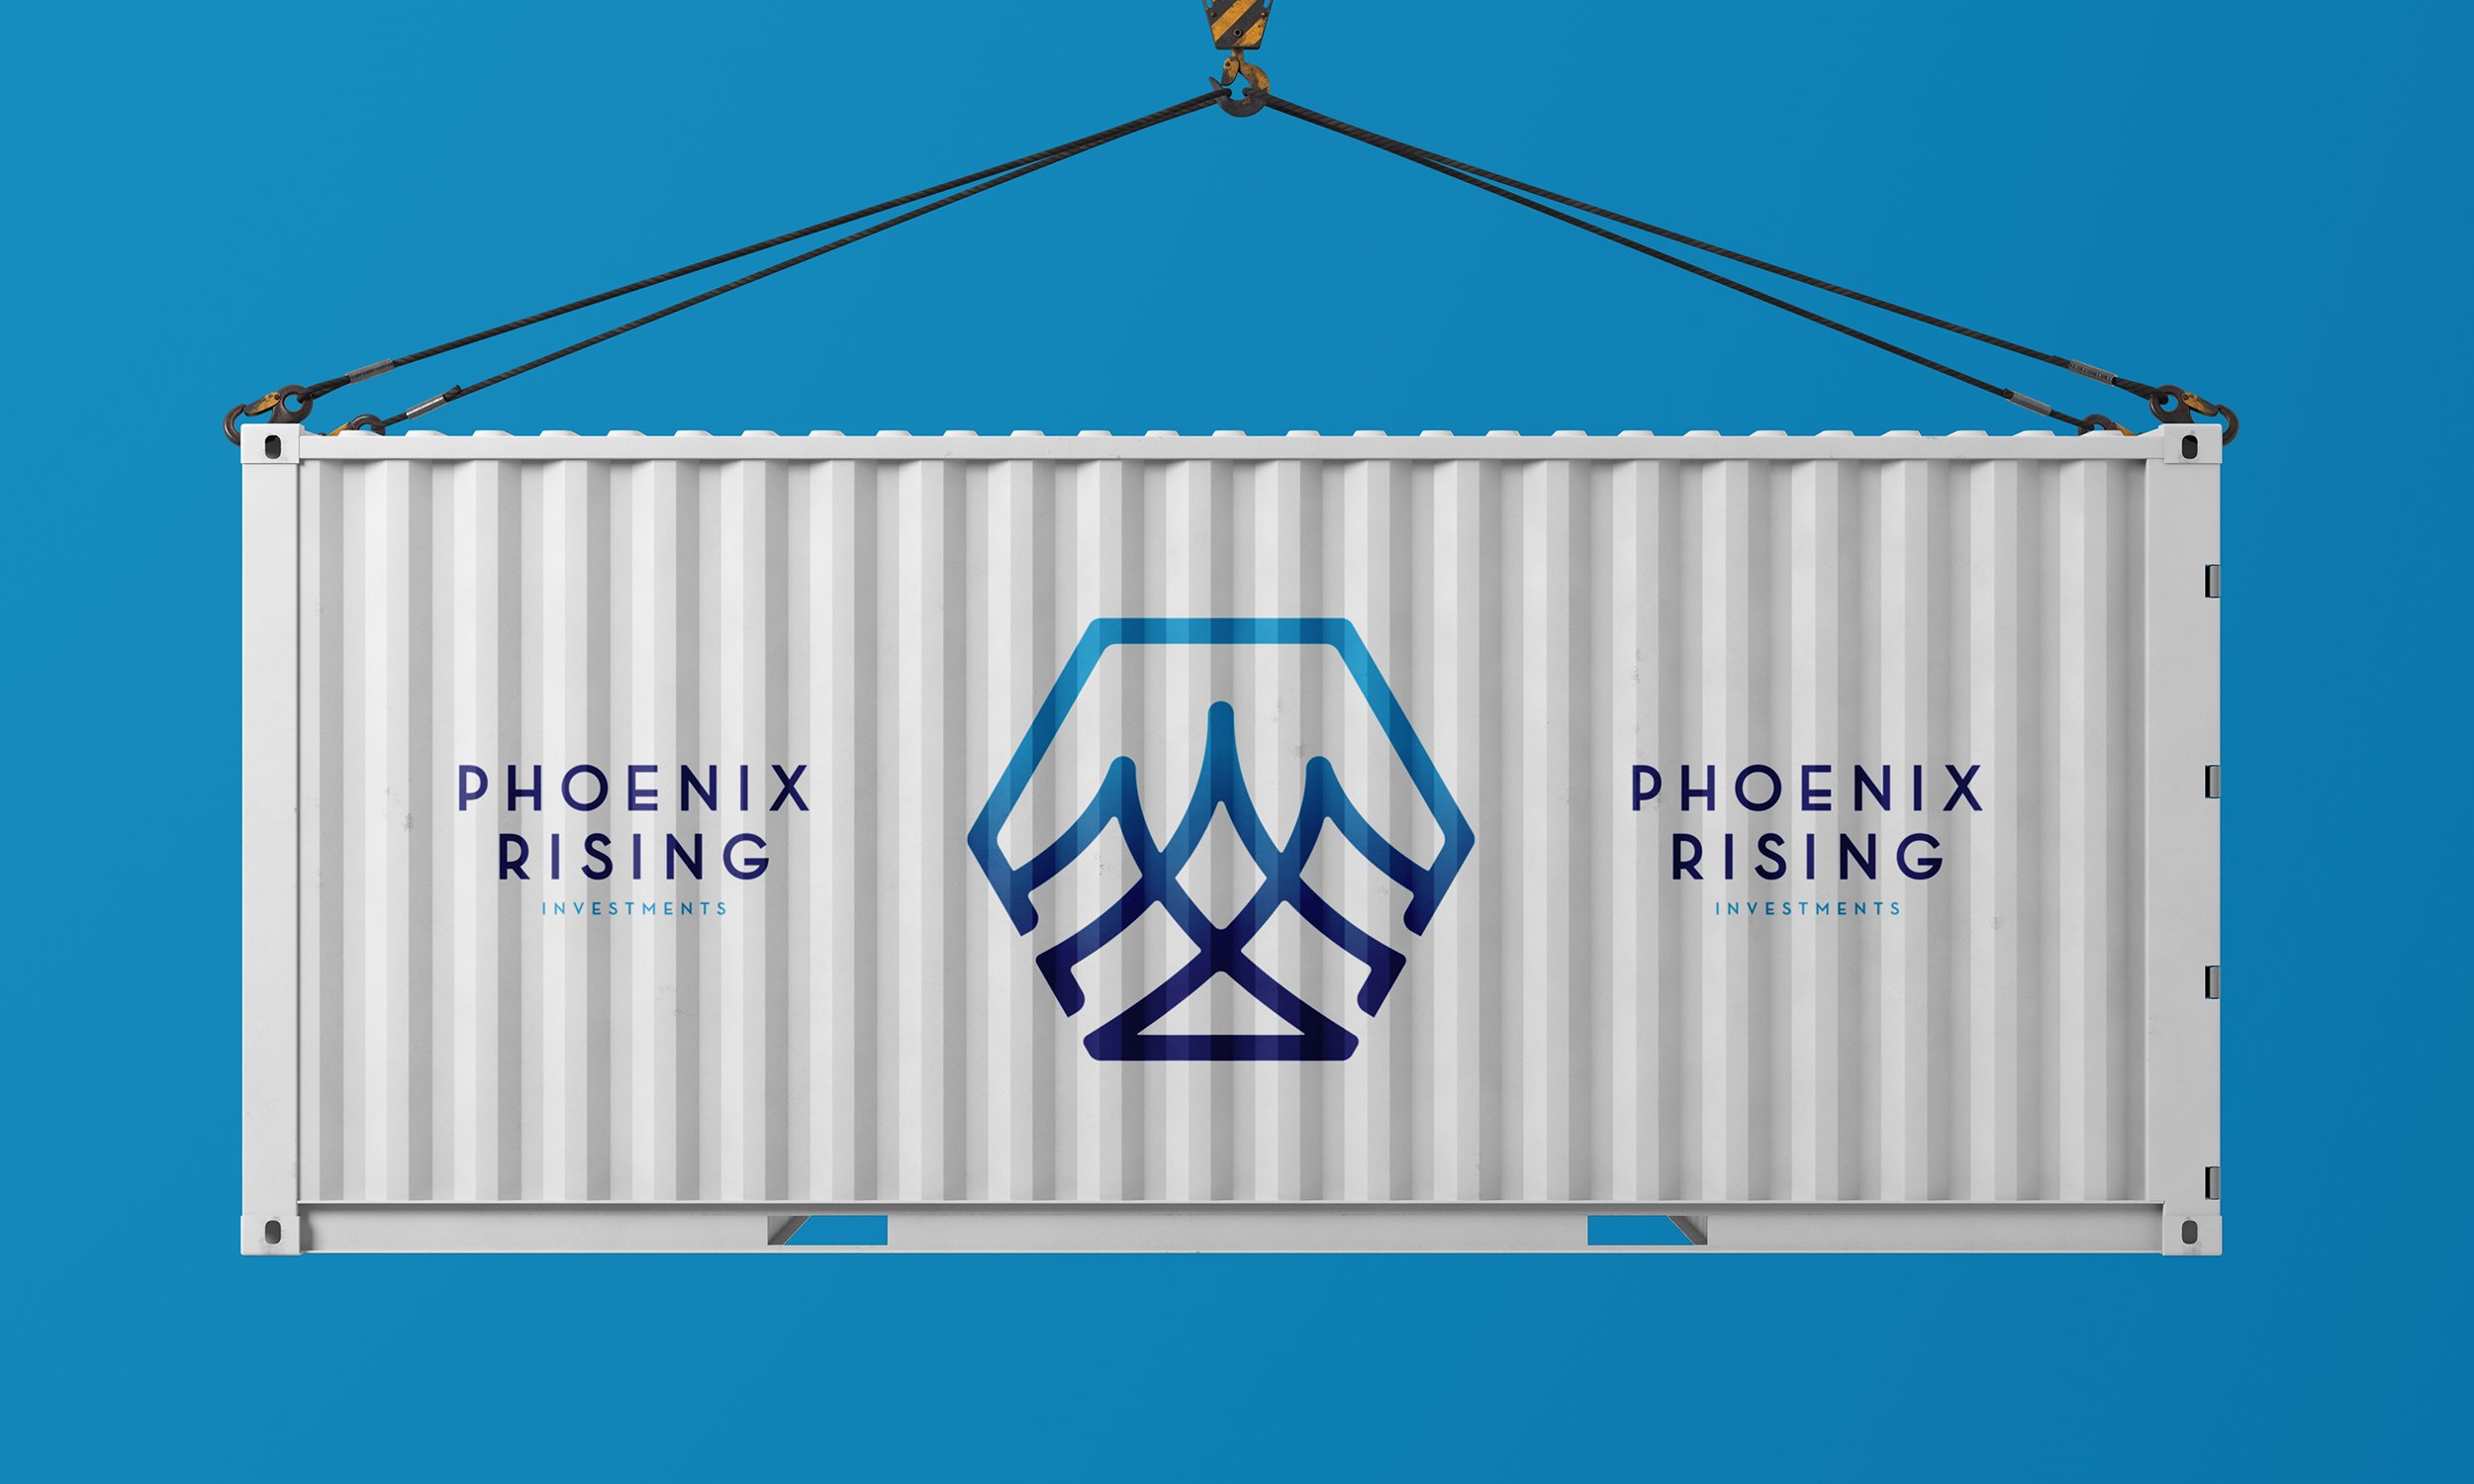 PhoenixRising_ShippingContainer.jpg